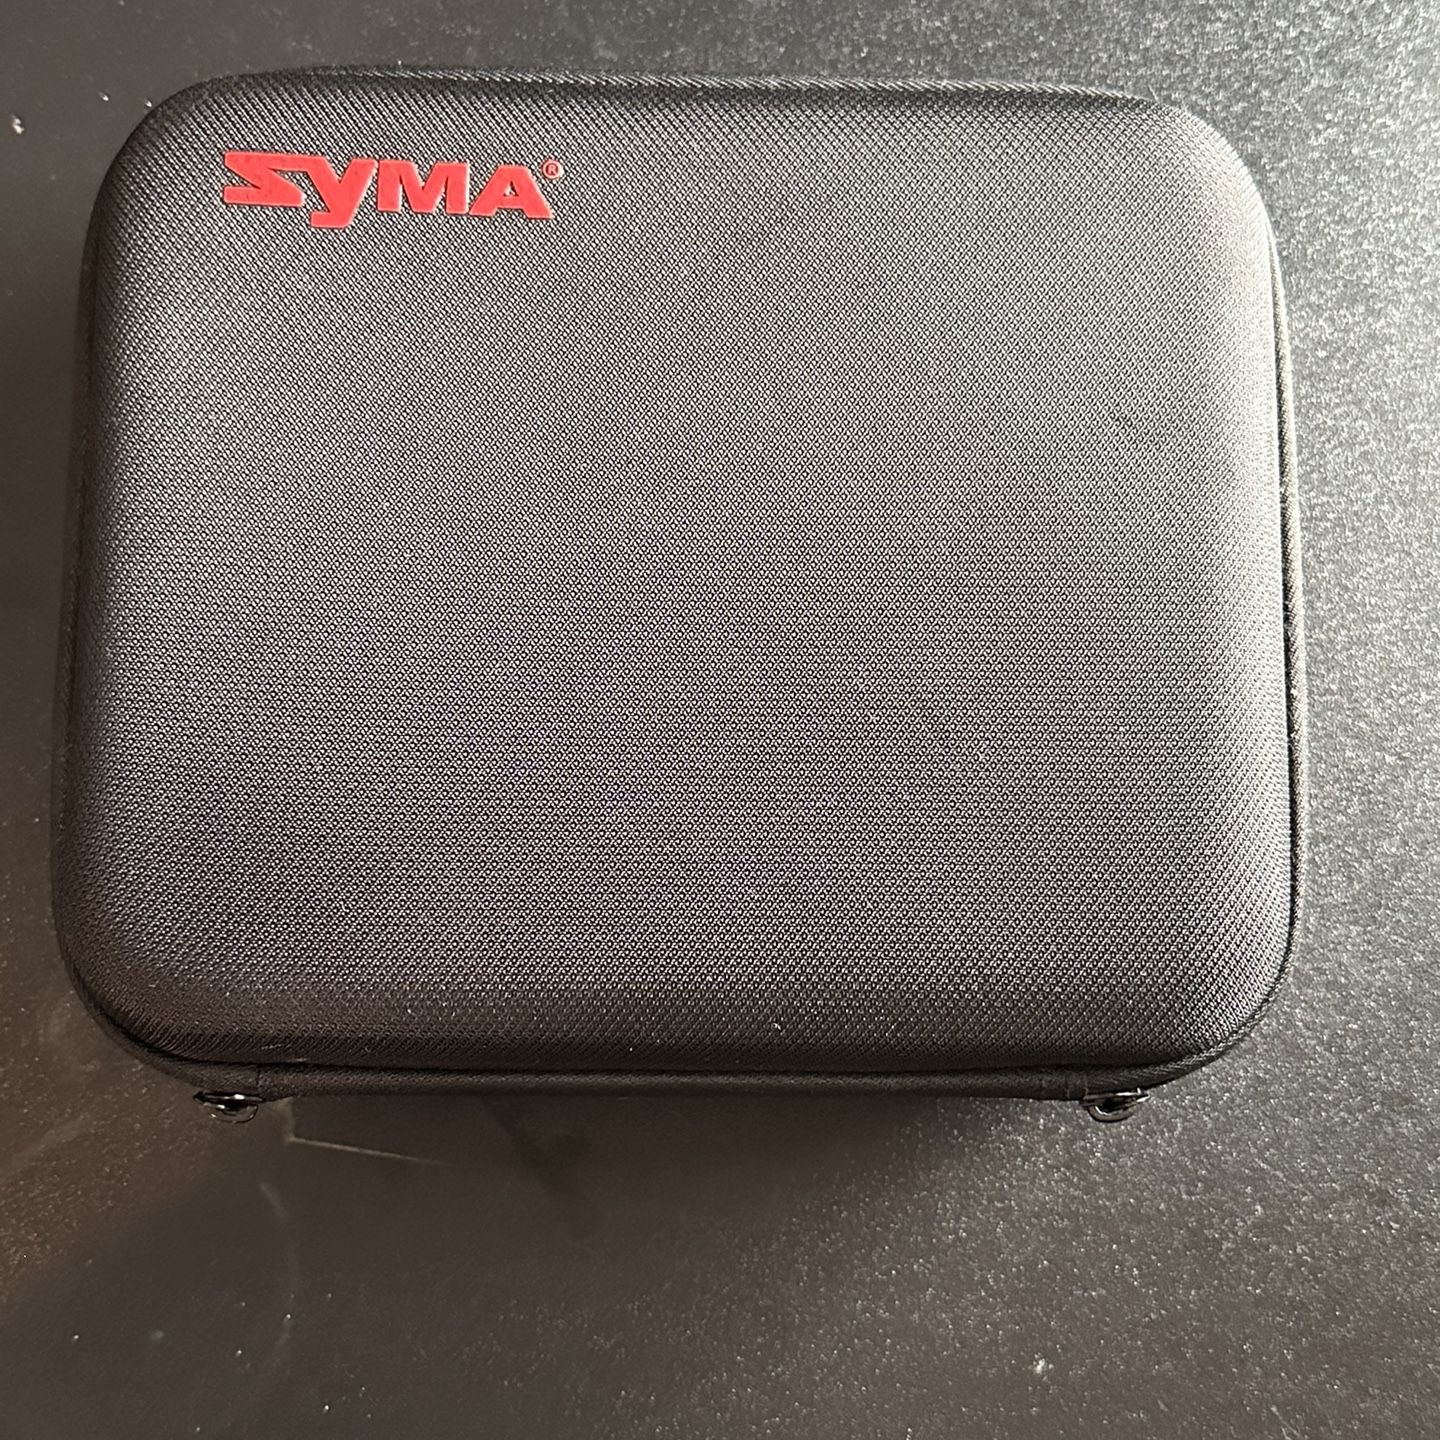 SYMA X500 Drone